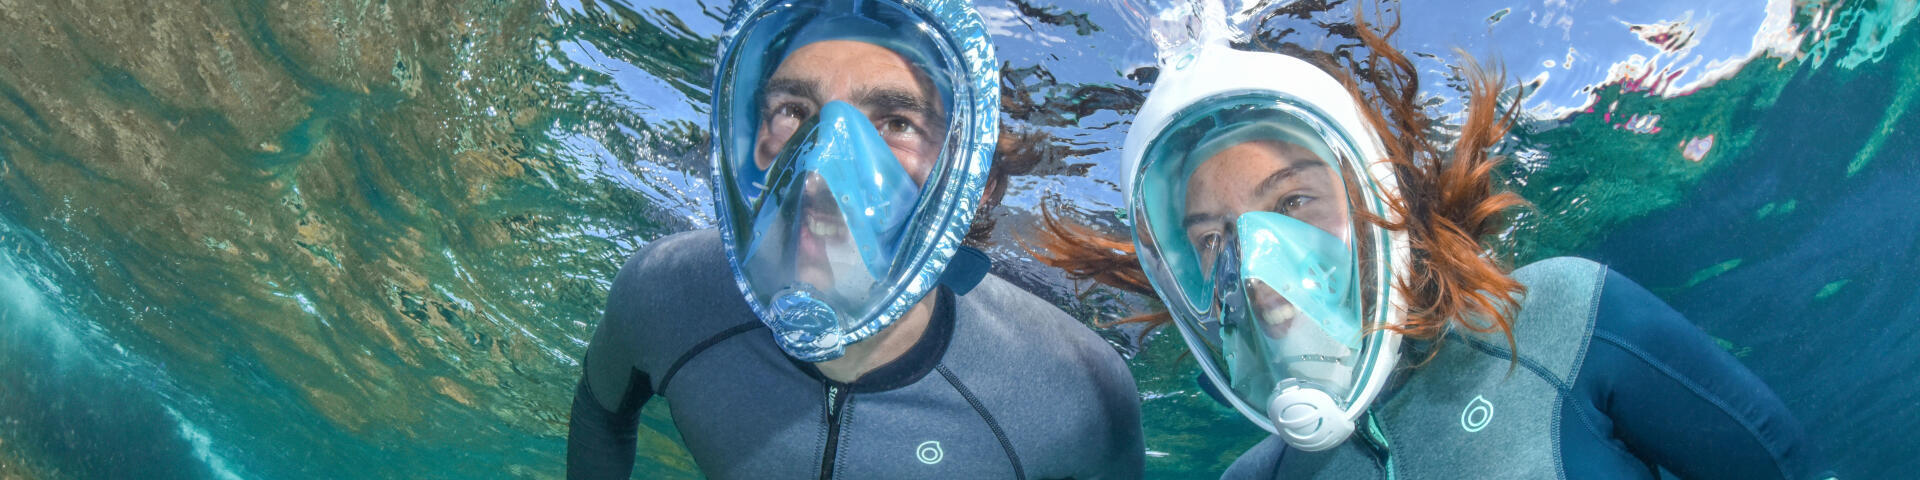 Máscara de snorkeling Easybreath para ver e respirar dentro de água como se estivesse em terra! 